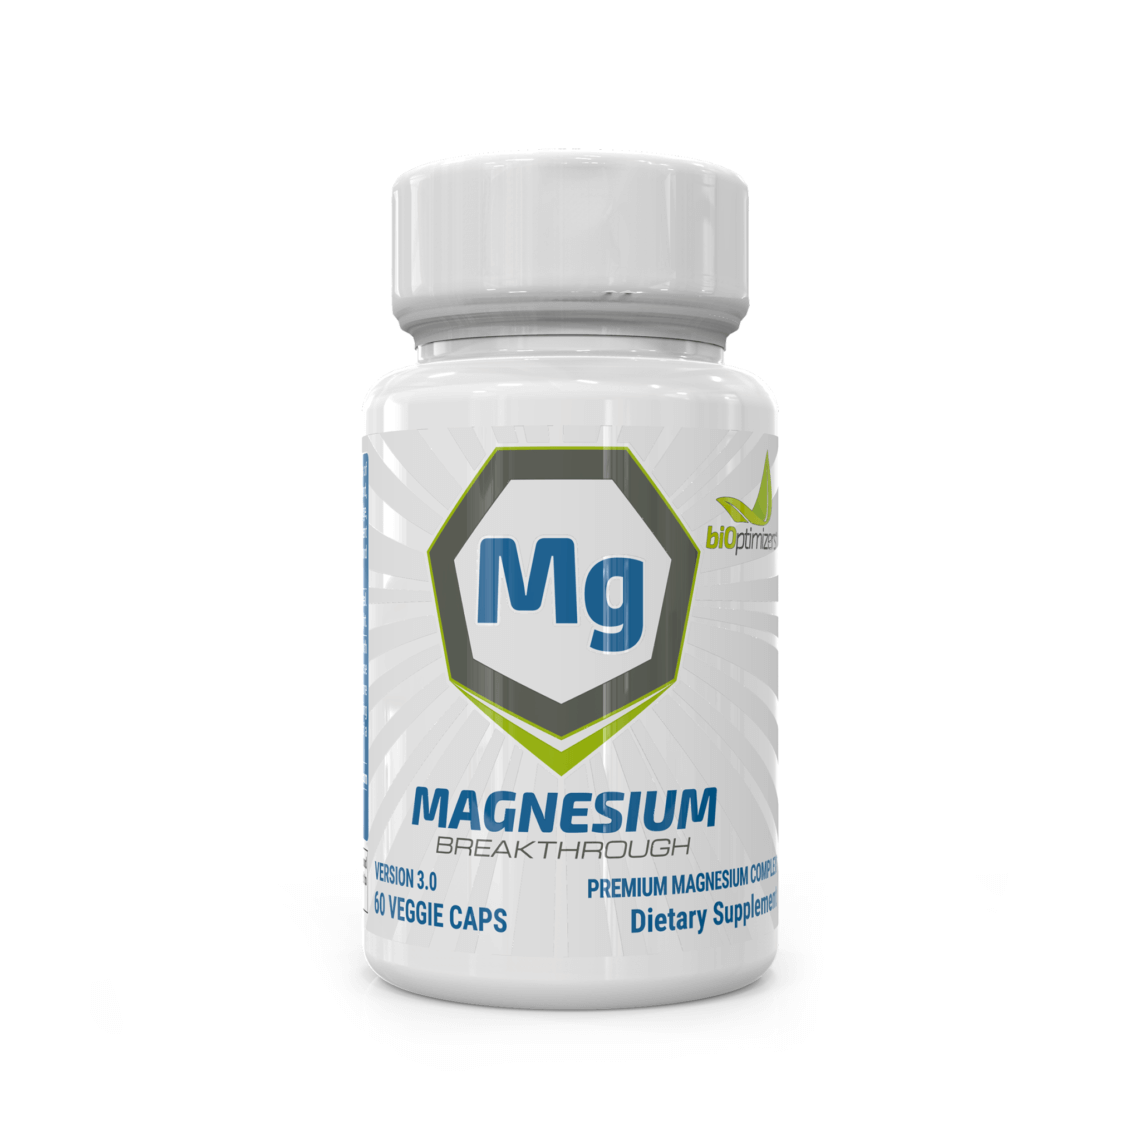 Magnesium Breakthrough Coupon - Magnesium Supplement Amazon